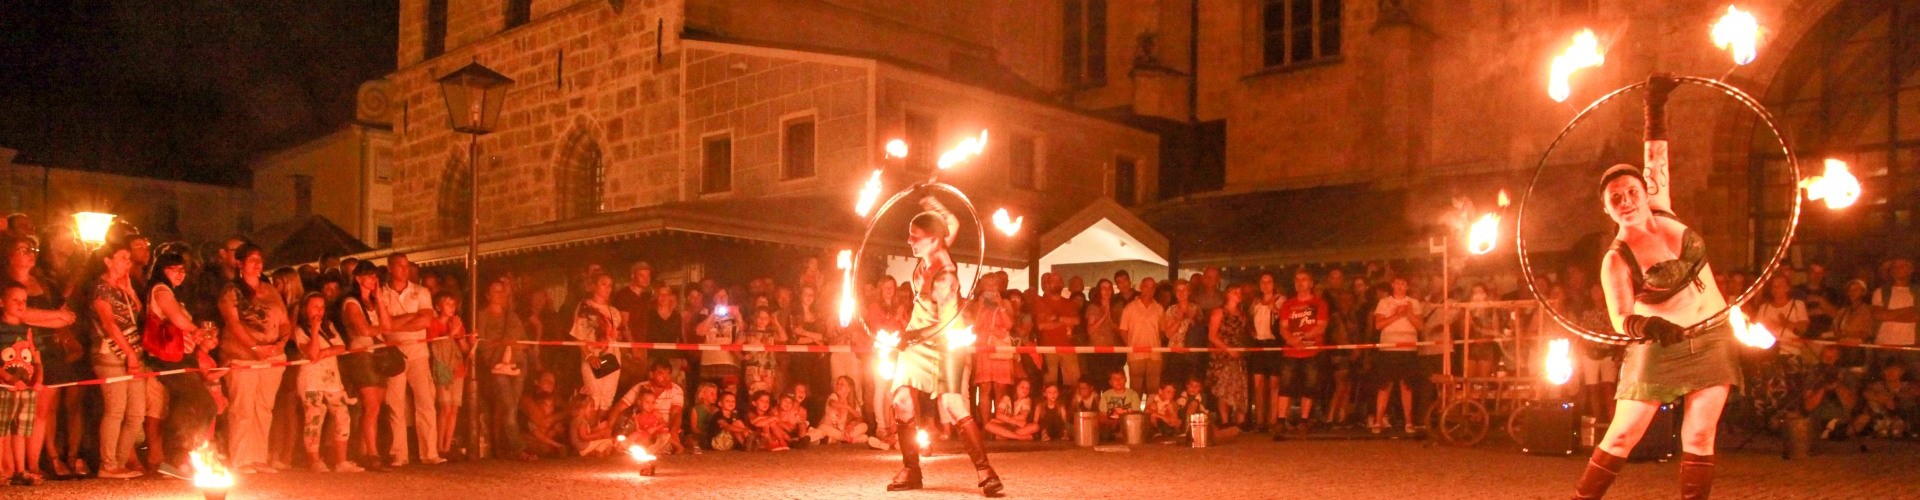 Eine Feuershow von Mediva vor der Stiftskirche am Altöttinger Stadtfest.